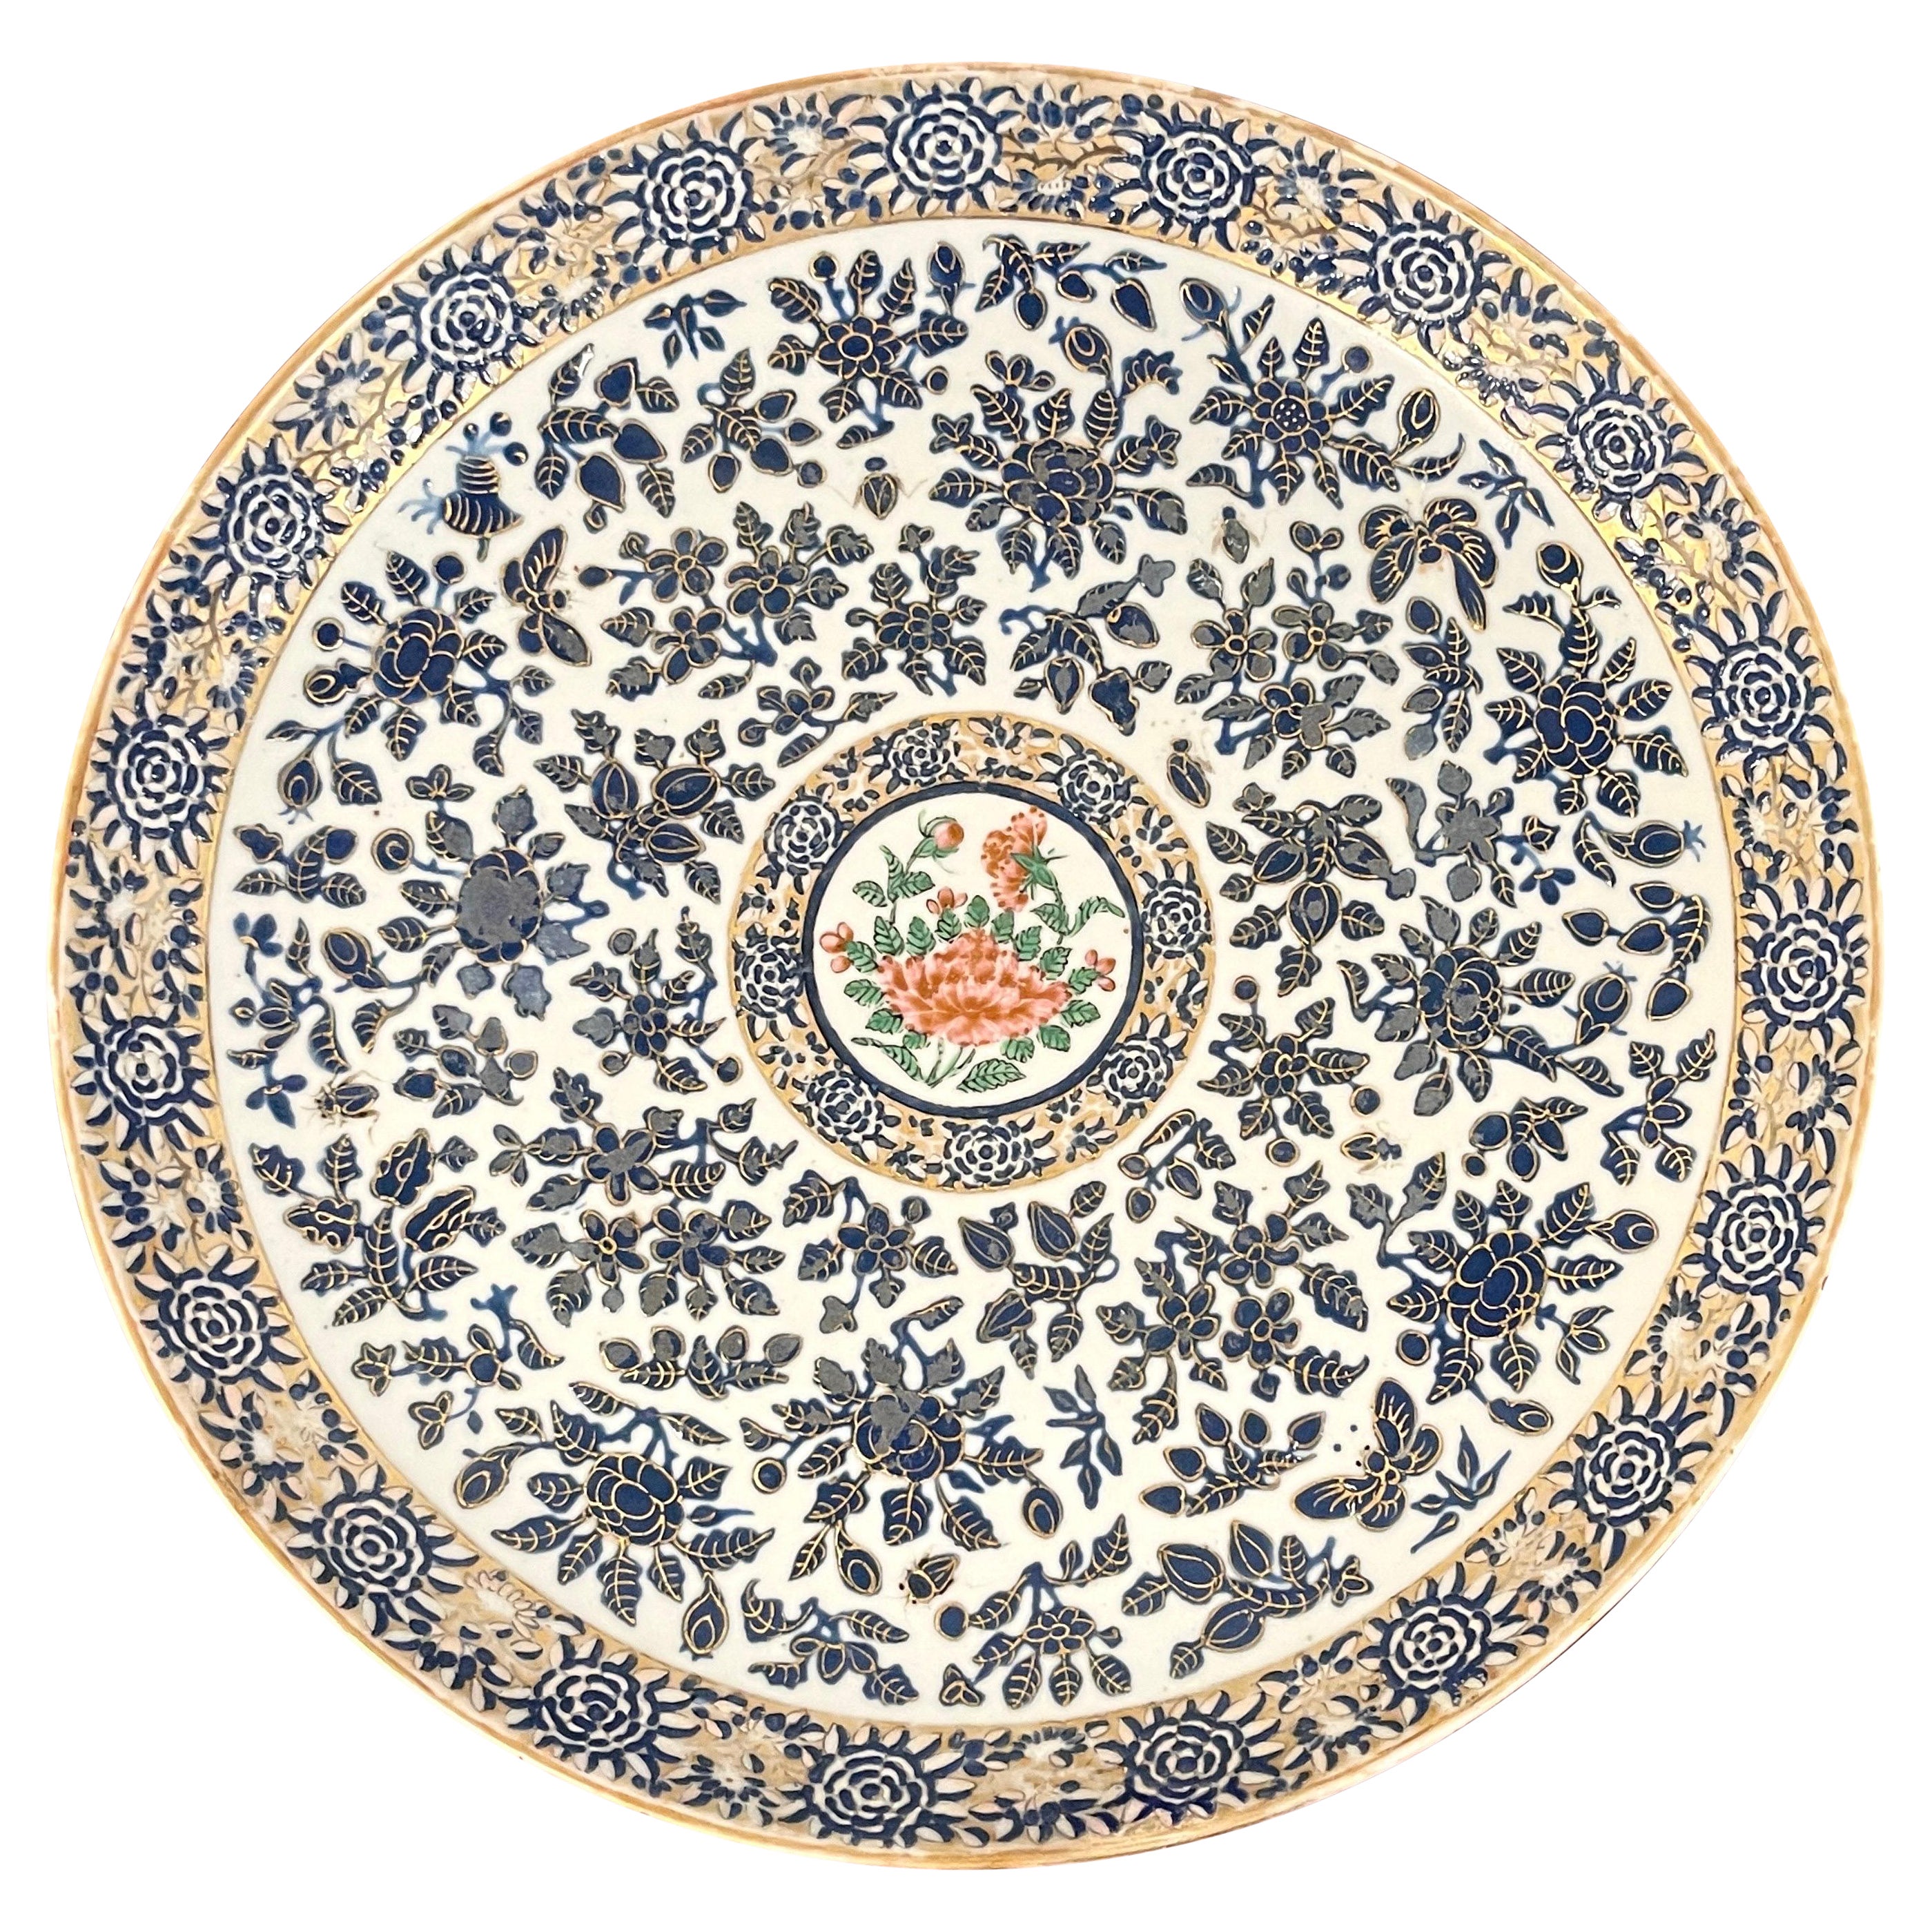 Chinesische Rose Famille-Platte mit Chrysantheme-Motiv-Dekor aus dem 19. Jahrhundert